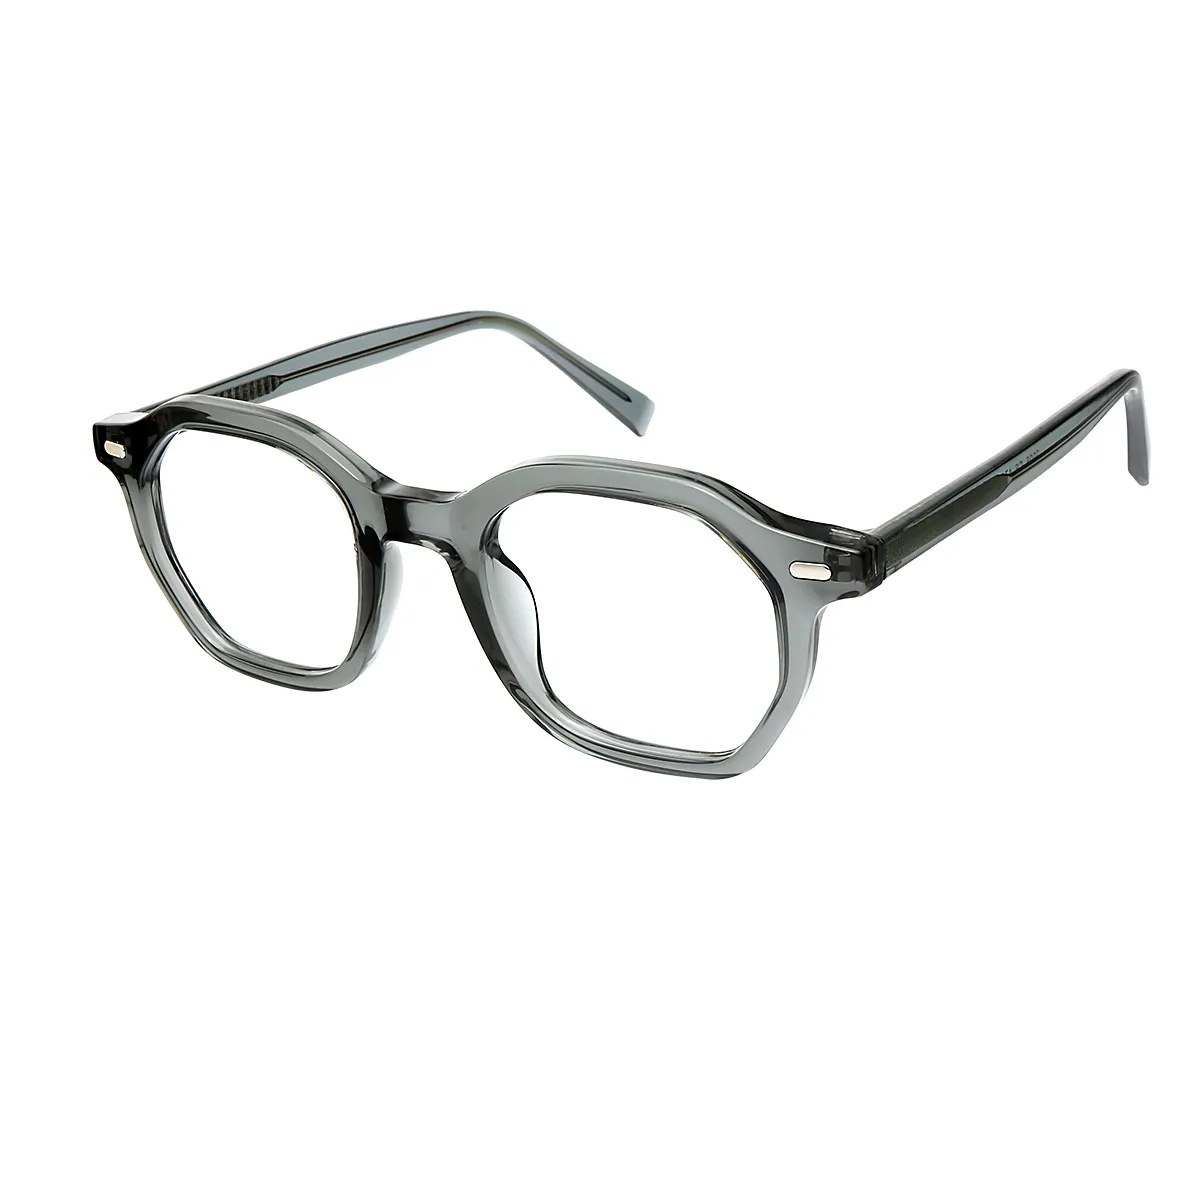 Finn - Geometric Gray Glasses for Men & Women